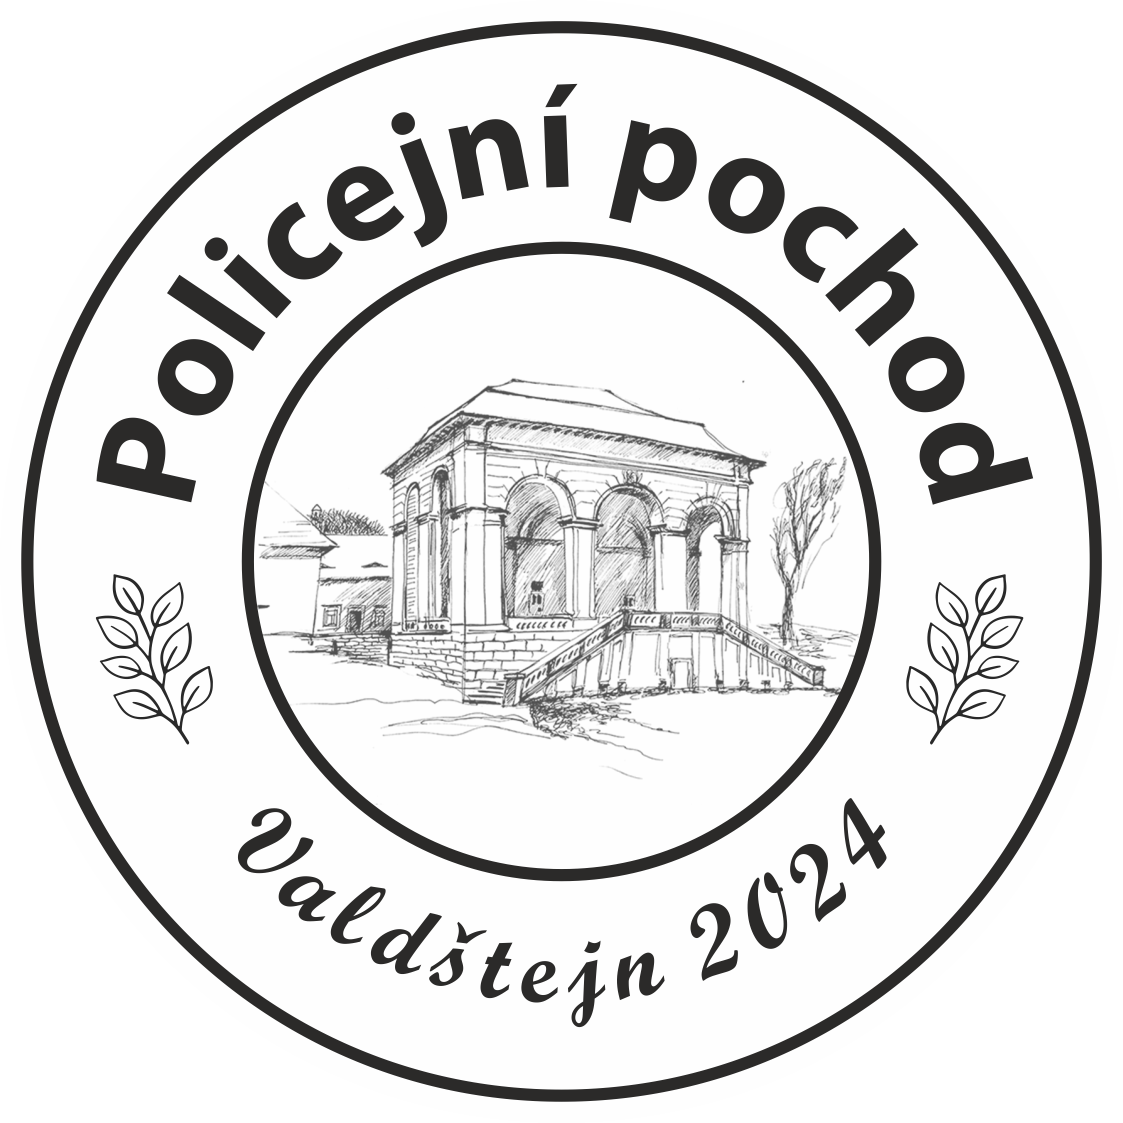 Logo policejní pochod